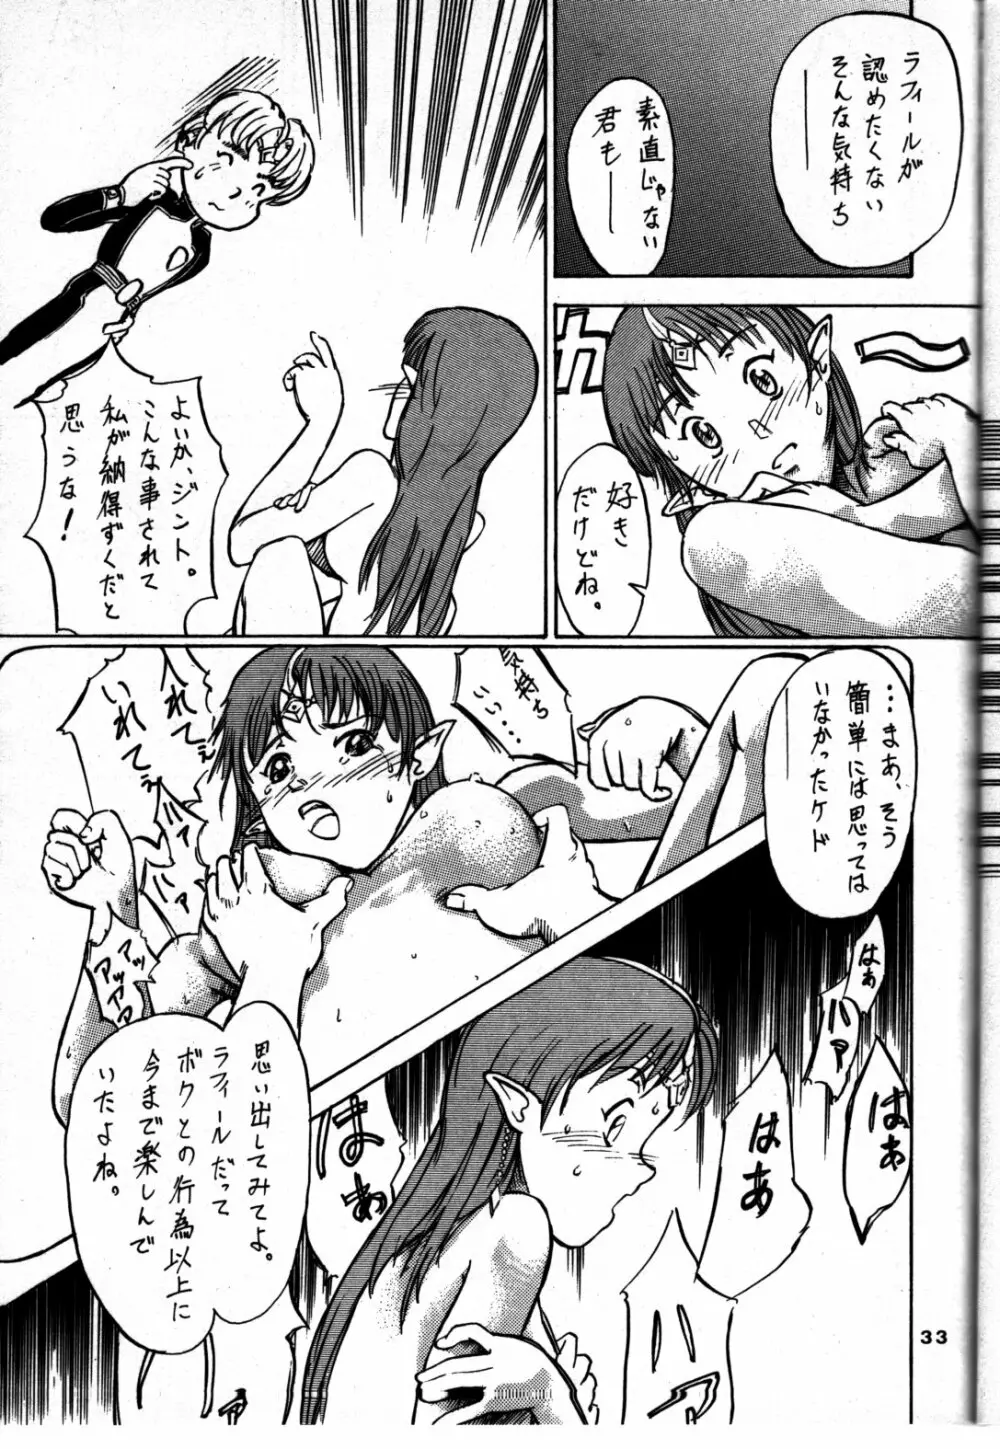 追放覚悟 Ver 4.0 - page33